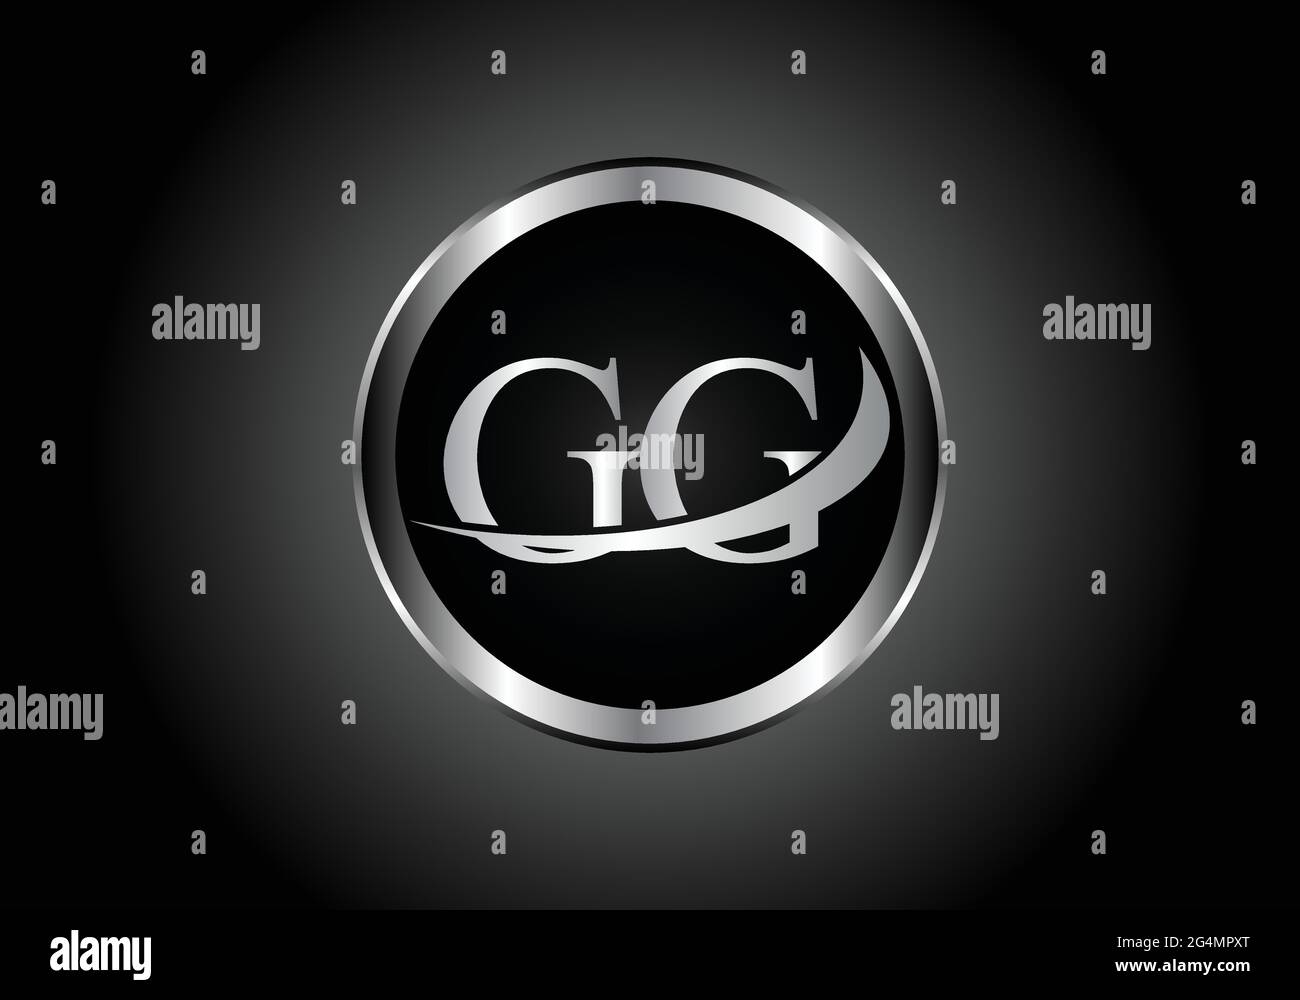 Lettre argent GG combinaison métal logo alphabet conception d'icône avec la couleur grise sur le noir et blanc dégradé design pour une entreprise ou une entreprise Illustration de Vecteur